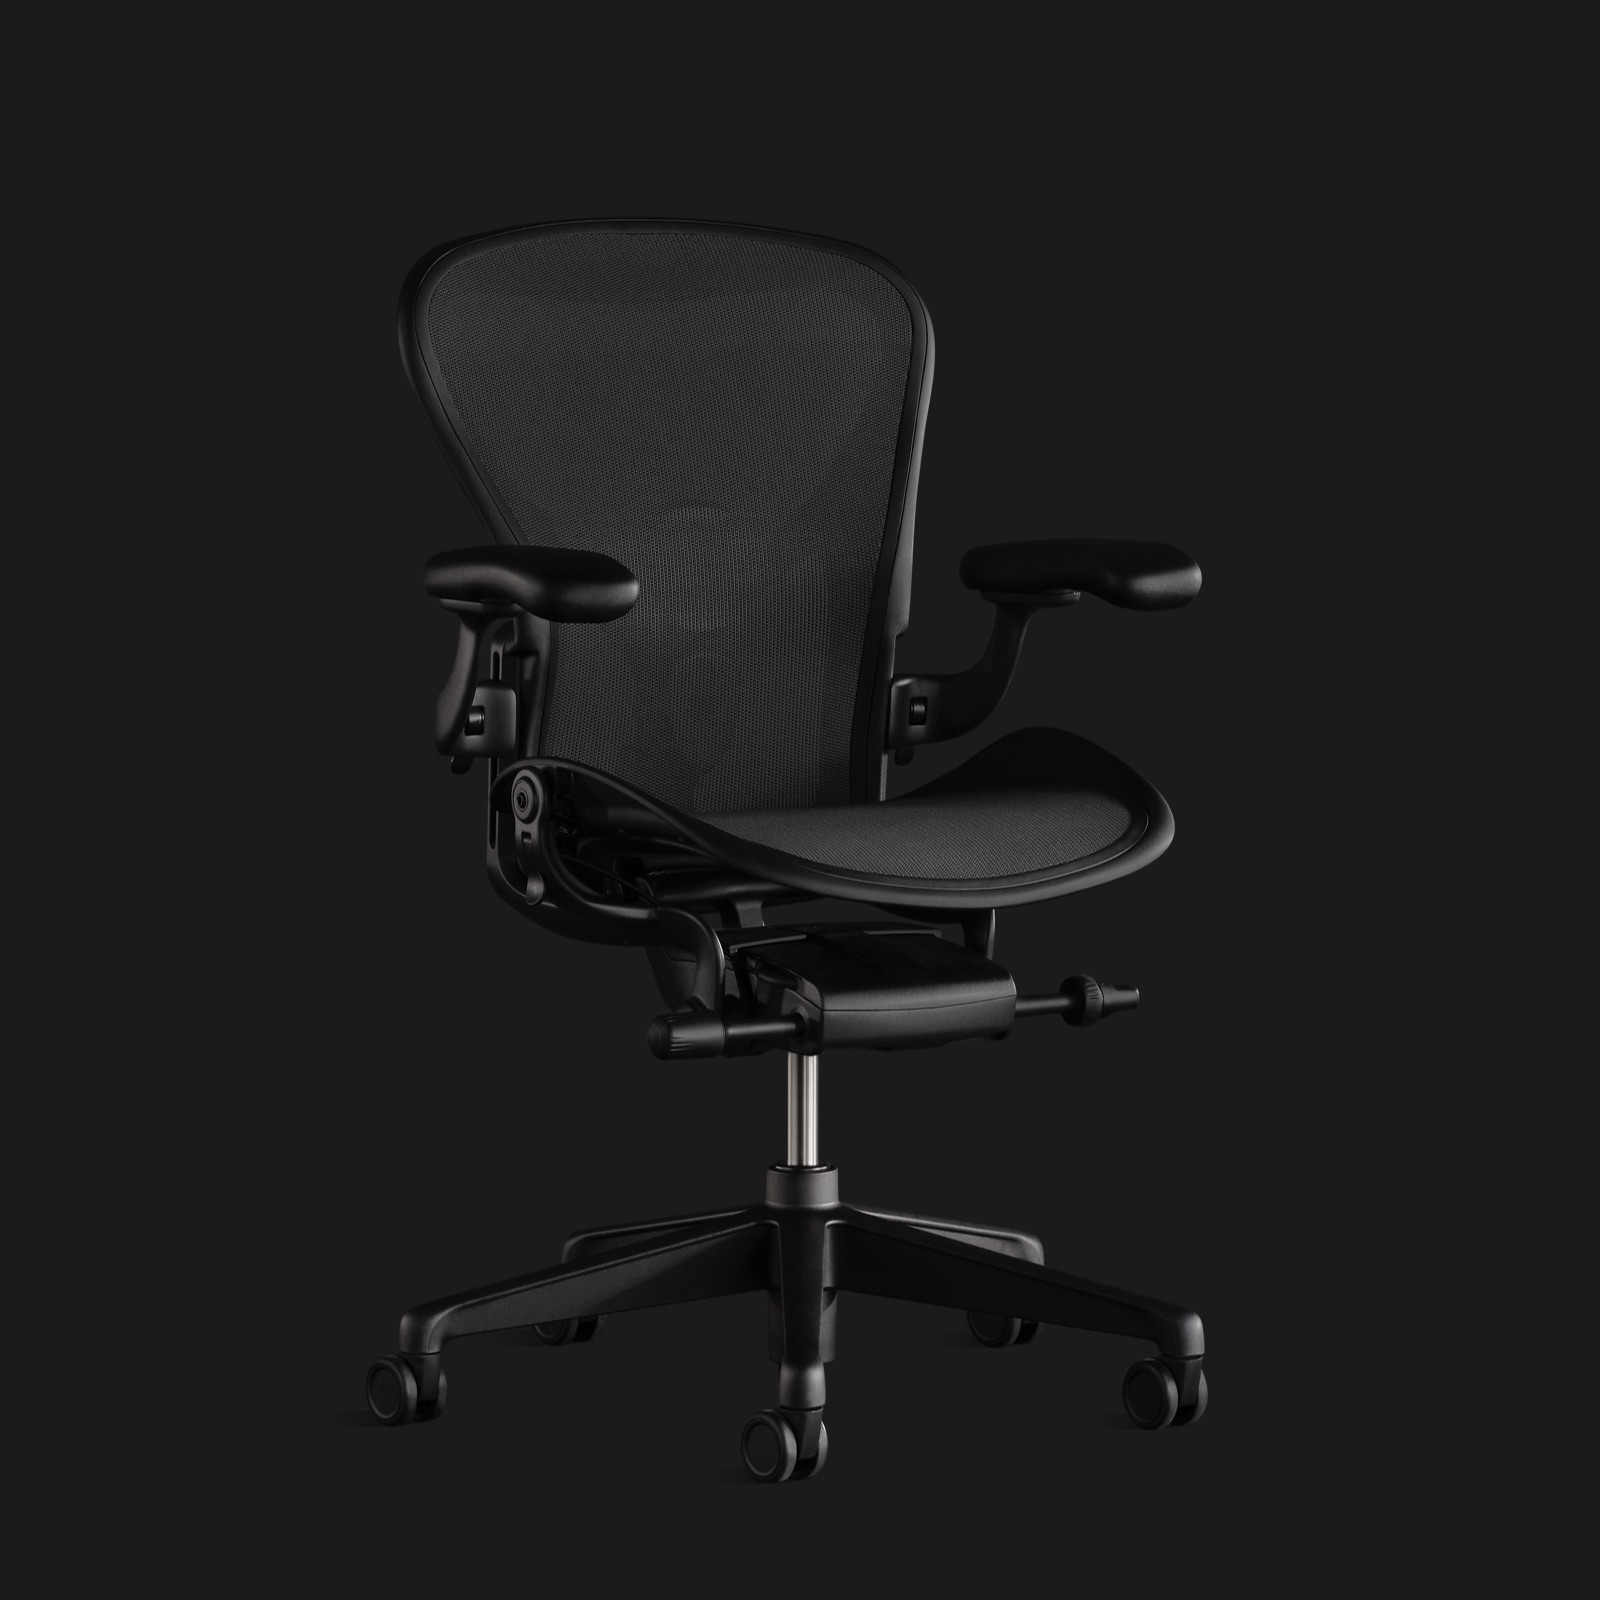 Ein Aeron Stuhl ganz in Schwarz vor einem schwarzen Hintergrund, leicht schräg von vorne betrachtet.